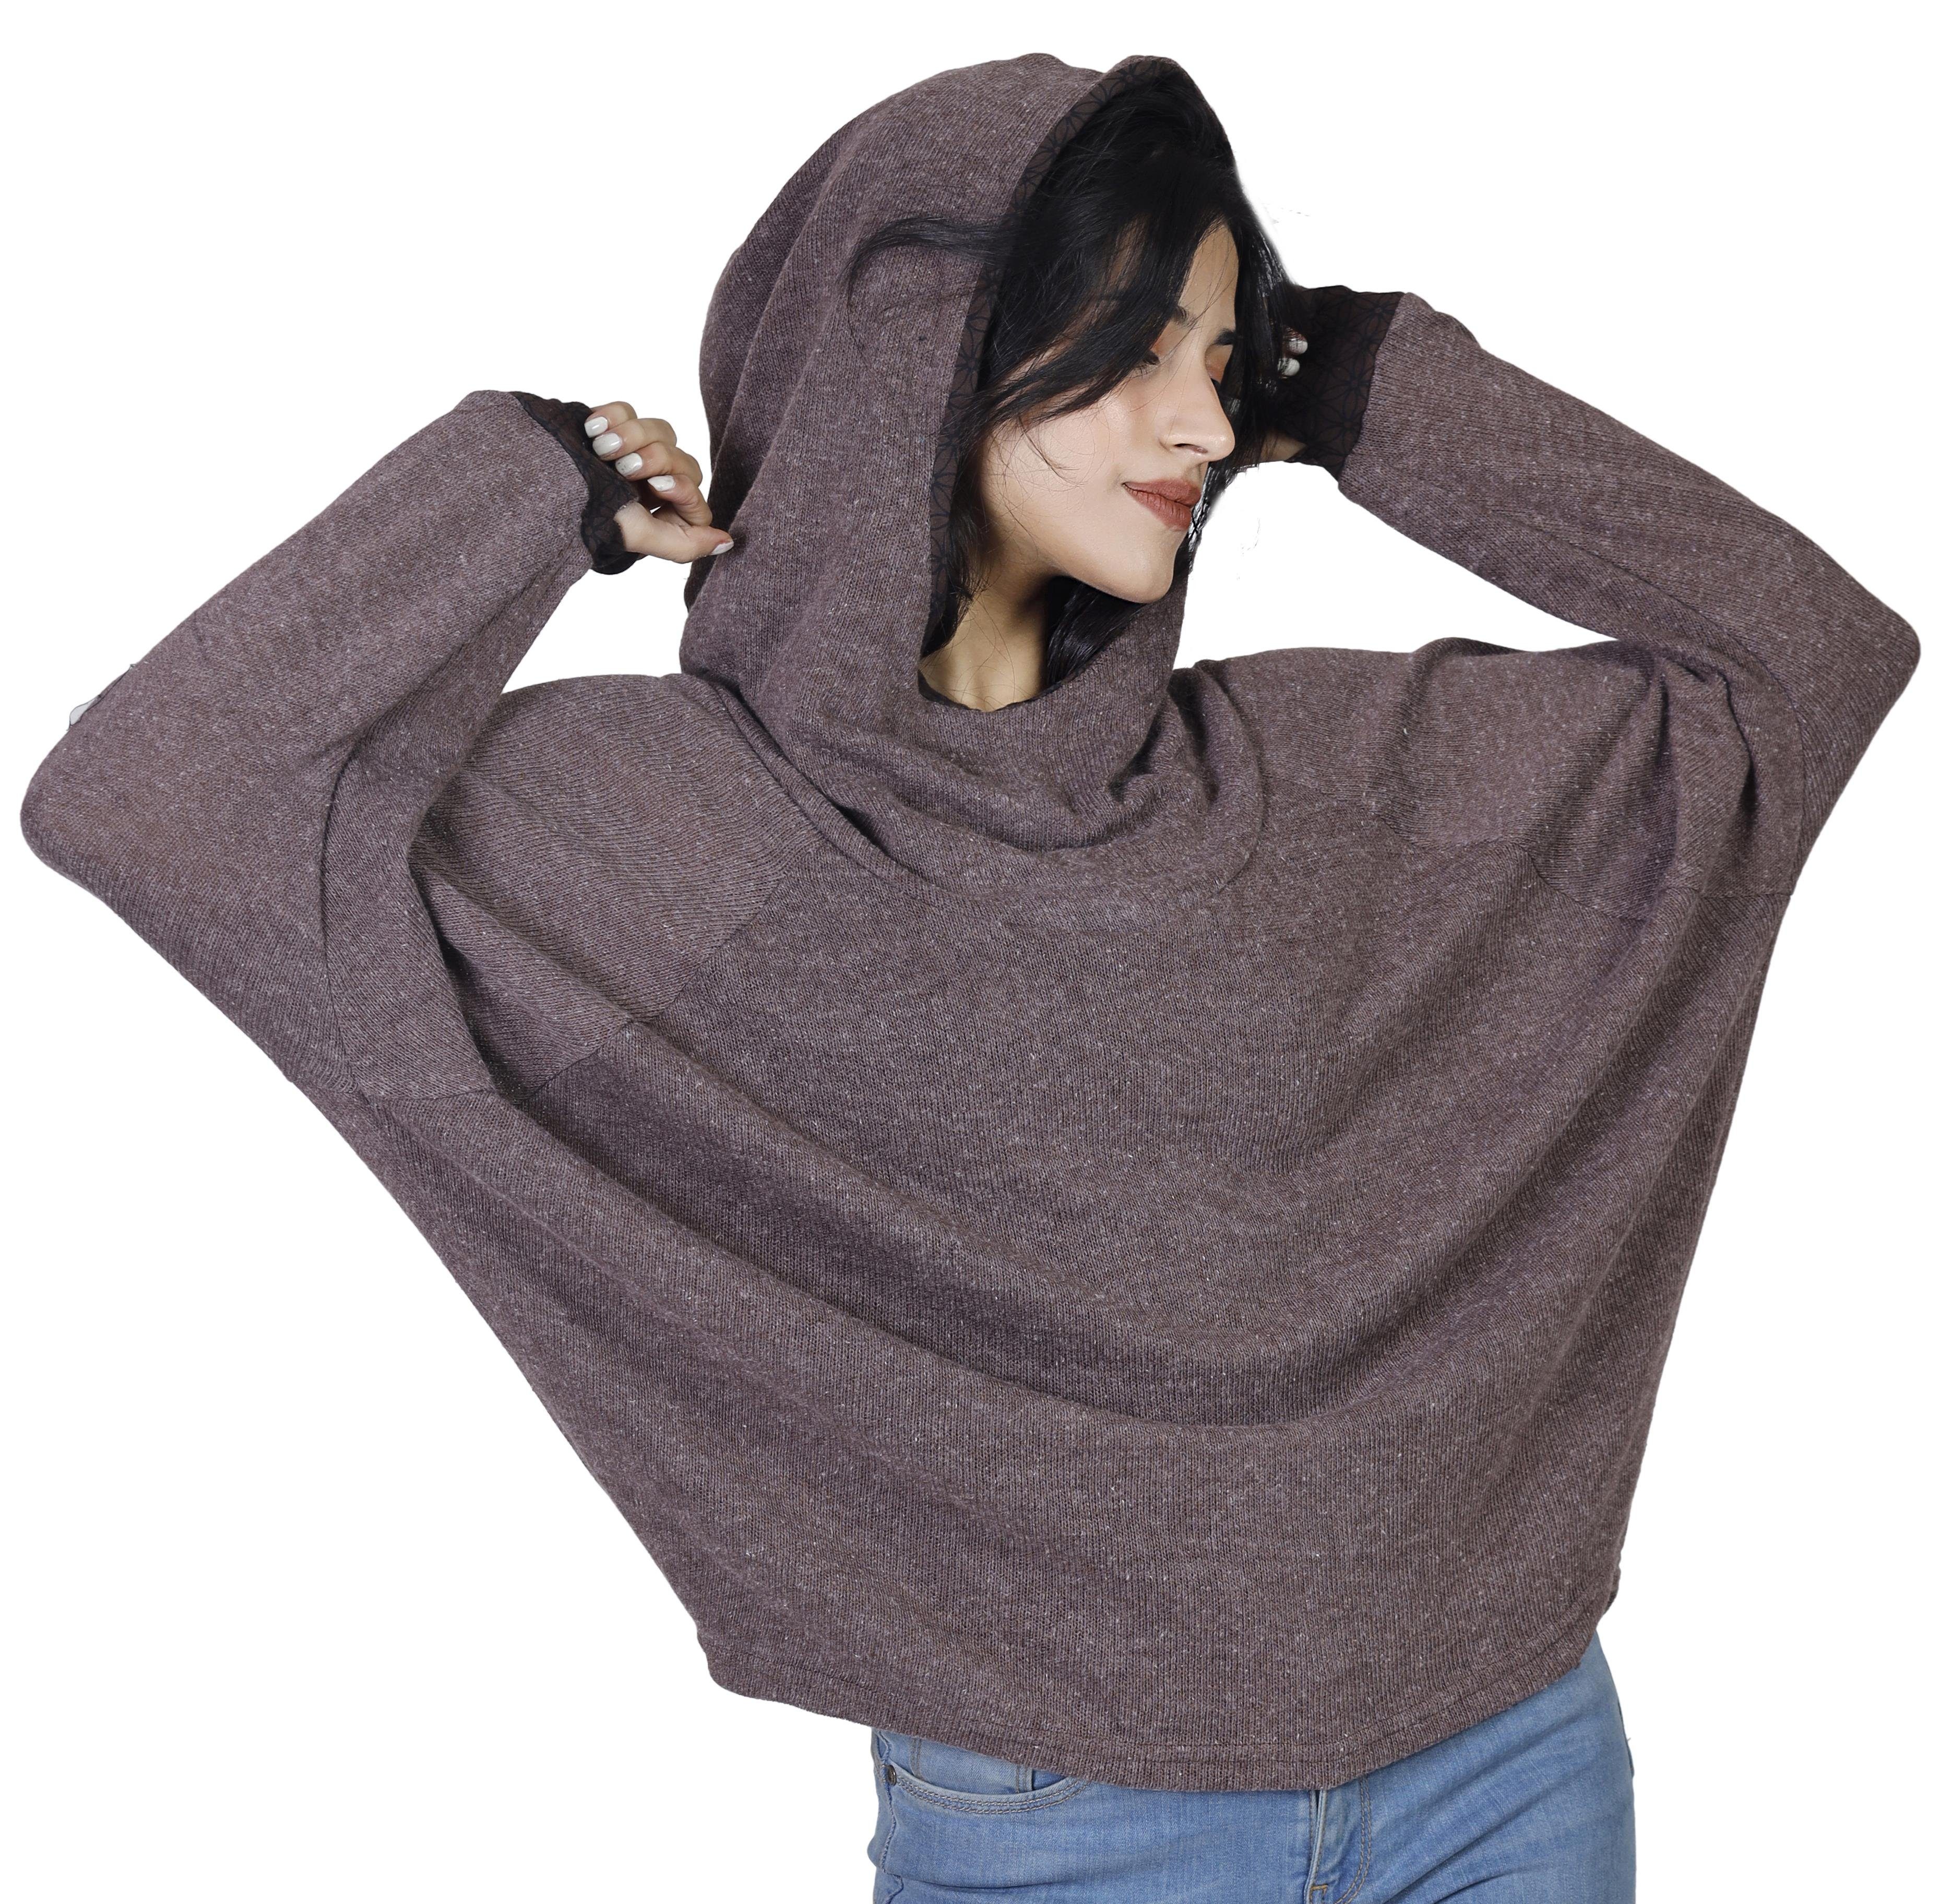 Bekleidung Kapuzenpullover Longsleeve Guru-Shop Pullover, Sweatshirt, alternative -.. Hoody, braun